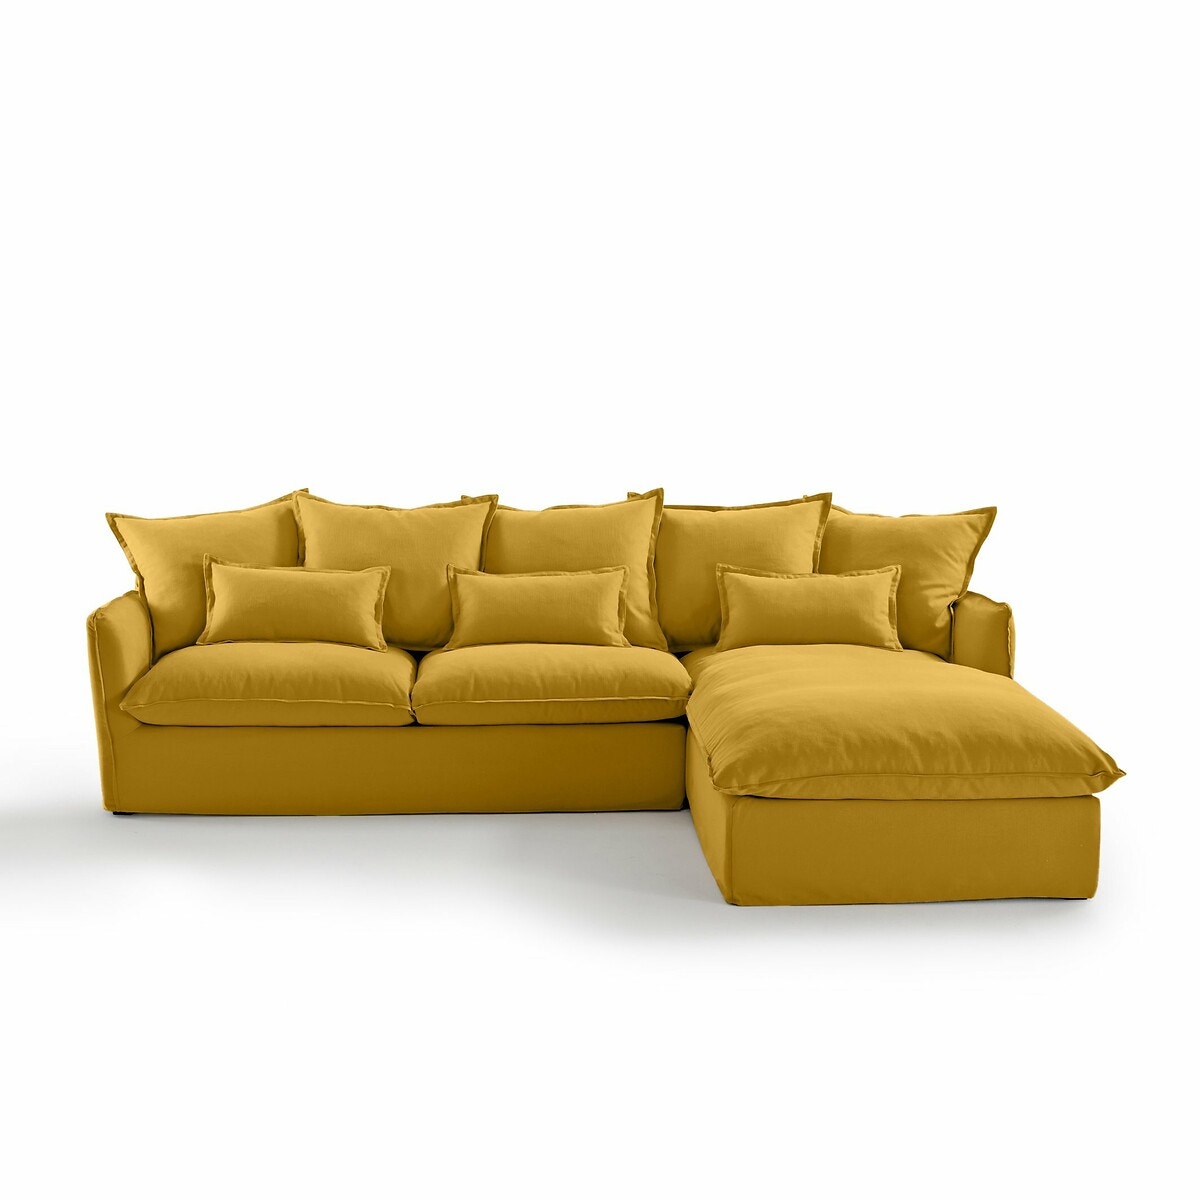 Σπίτι > Έπιπλα > Καθιστικό > Καναπέδες > Γωνιακοί καναπέδες Γωνιακός καναπές-κρεβάτι από βαμβάκι λινό τεχνολογίας Bultex Μ190xΠ294xΥ90cm